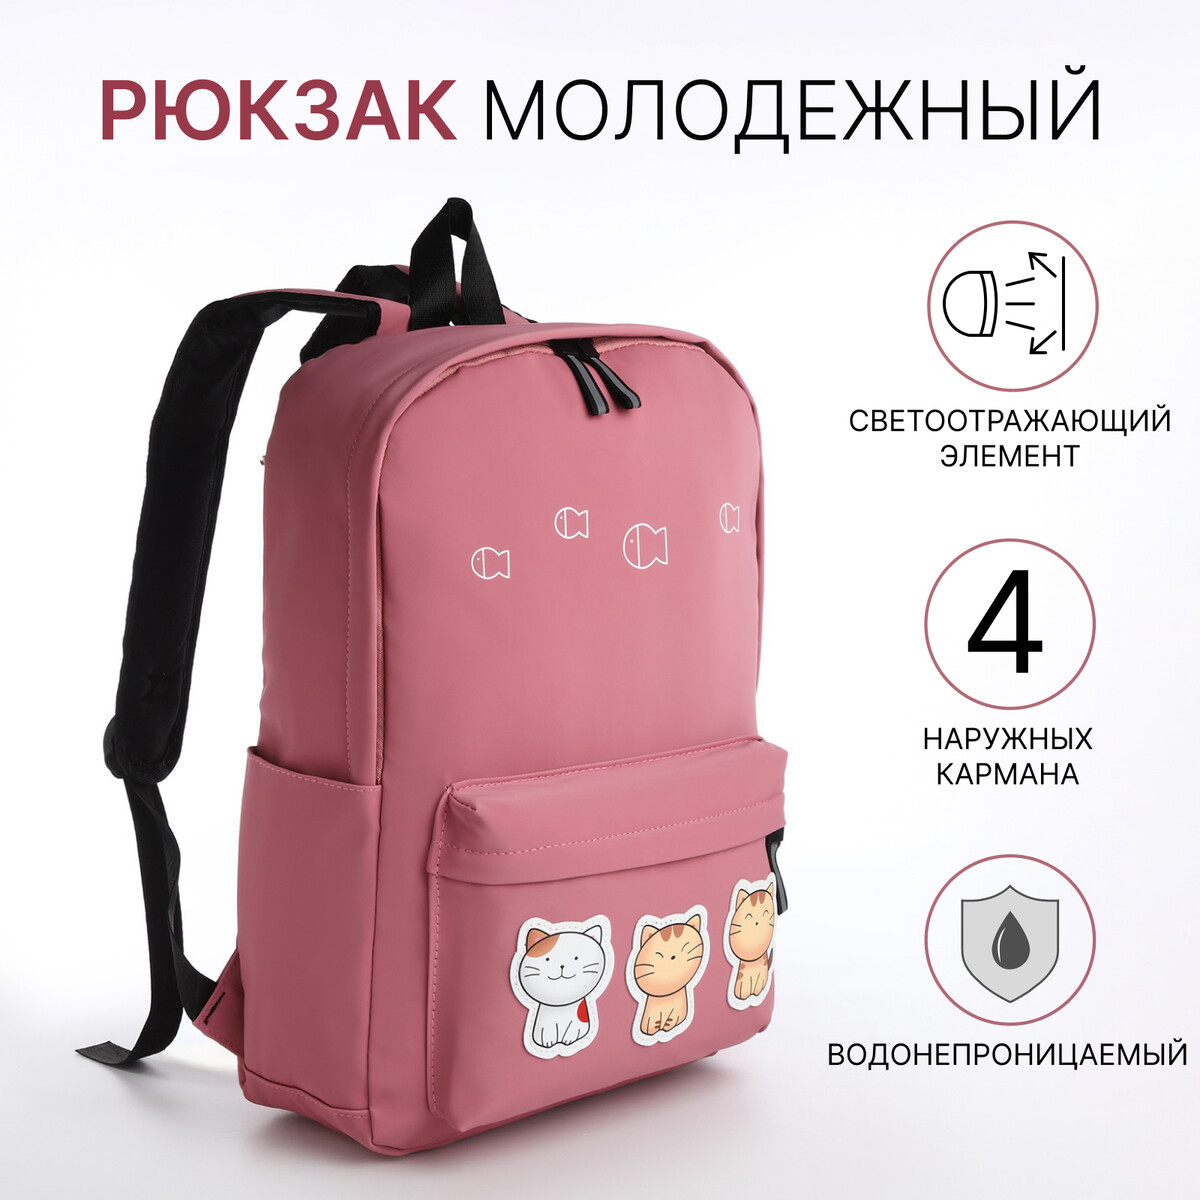 Рюкзак молодежный из текстиля на молнии, 4 кармана, цвет розовый рюкзак школьный из текстиля на молнии 3 кармана розовый